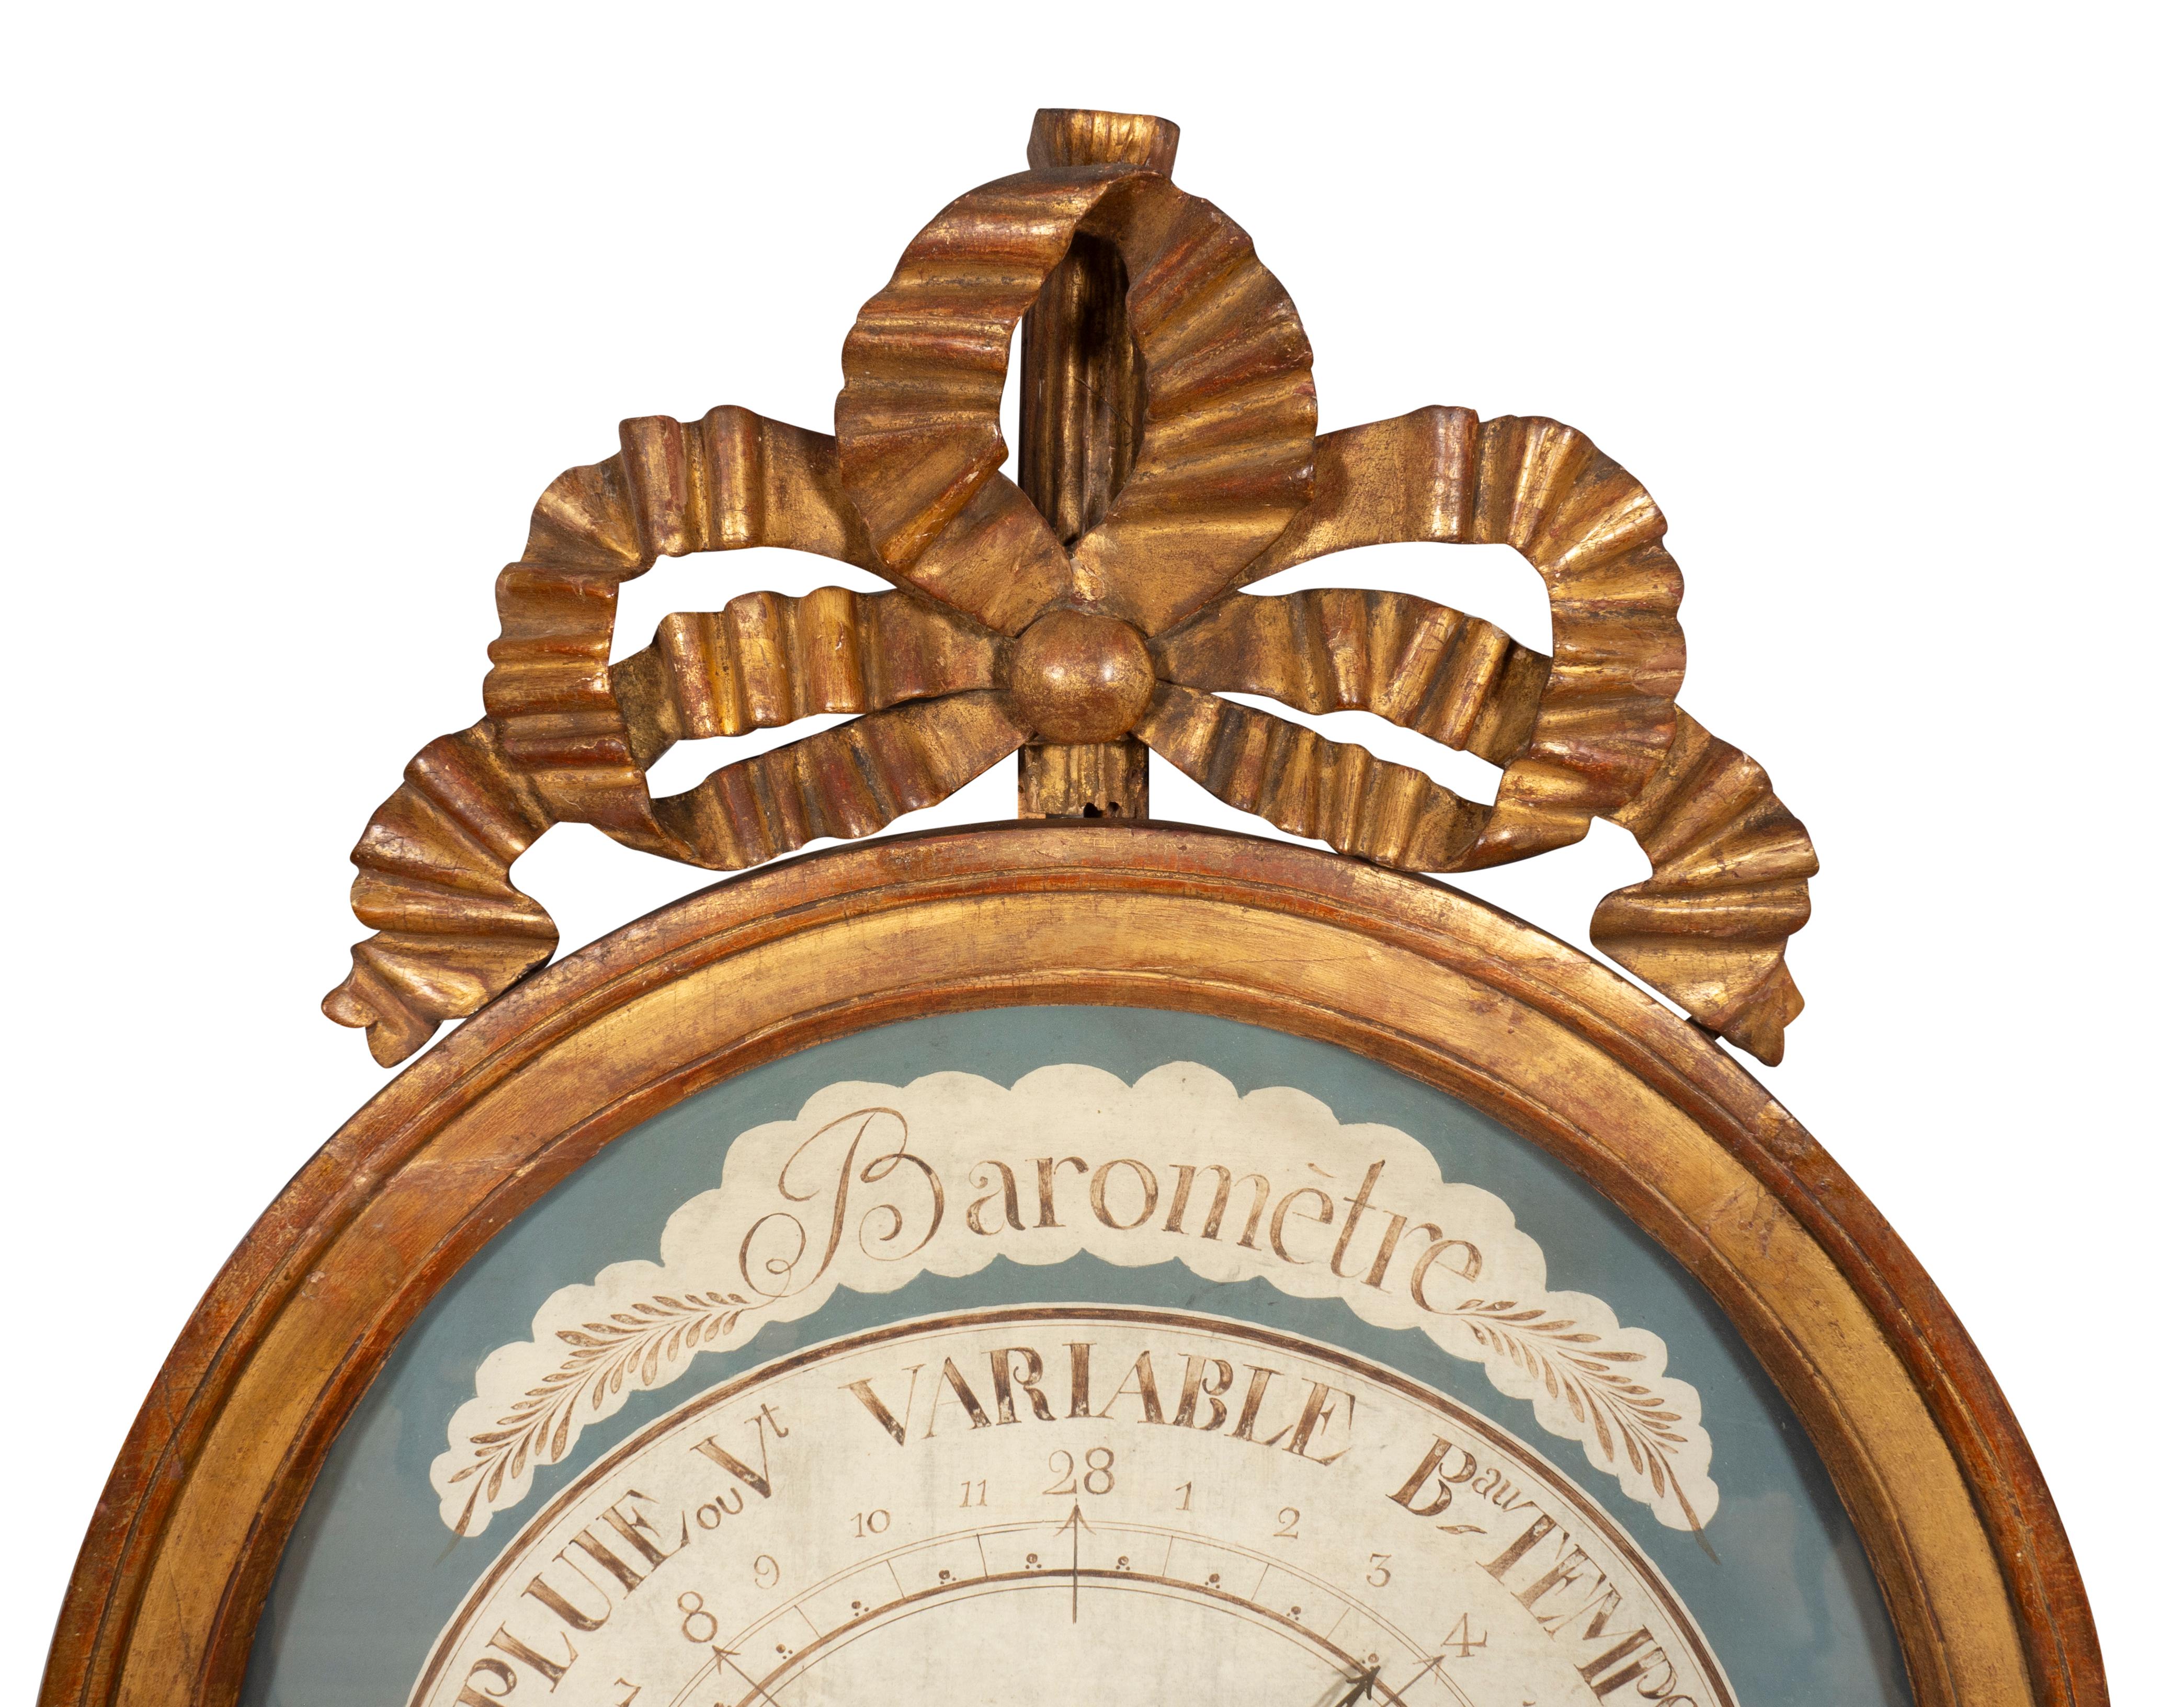 Oval mit Bandschleife über einem ovalen Barometer mit Glasfront und grisaille bemalter Tafel mit Directionals aus Metall. Beschriftet Selon Torricelli.